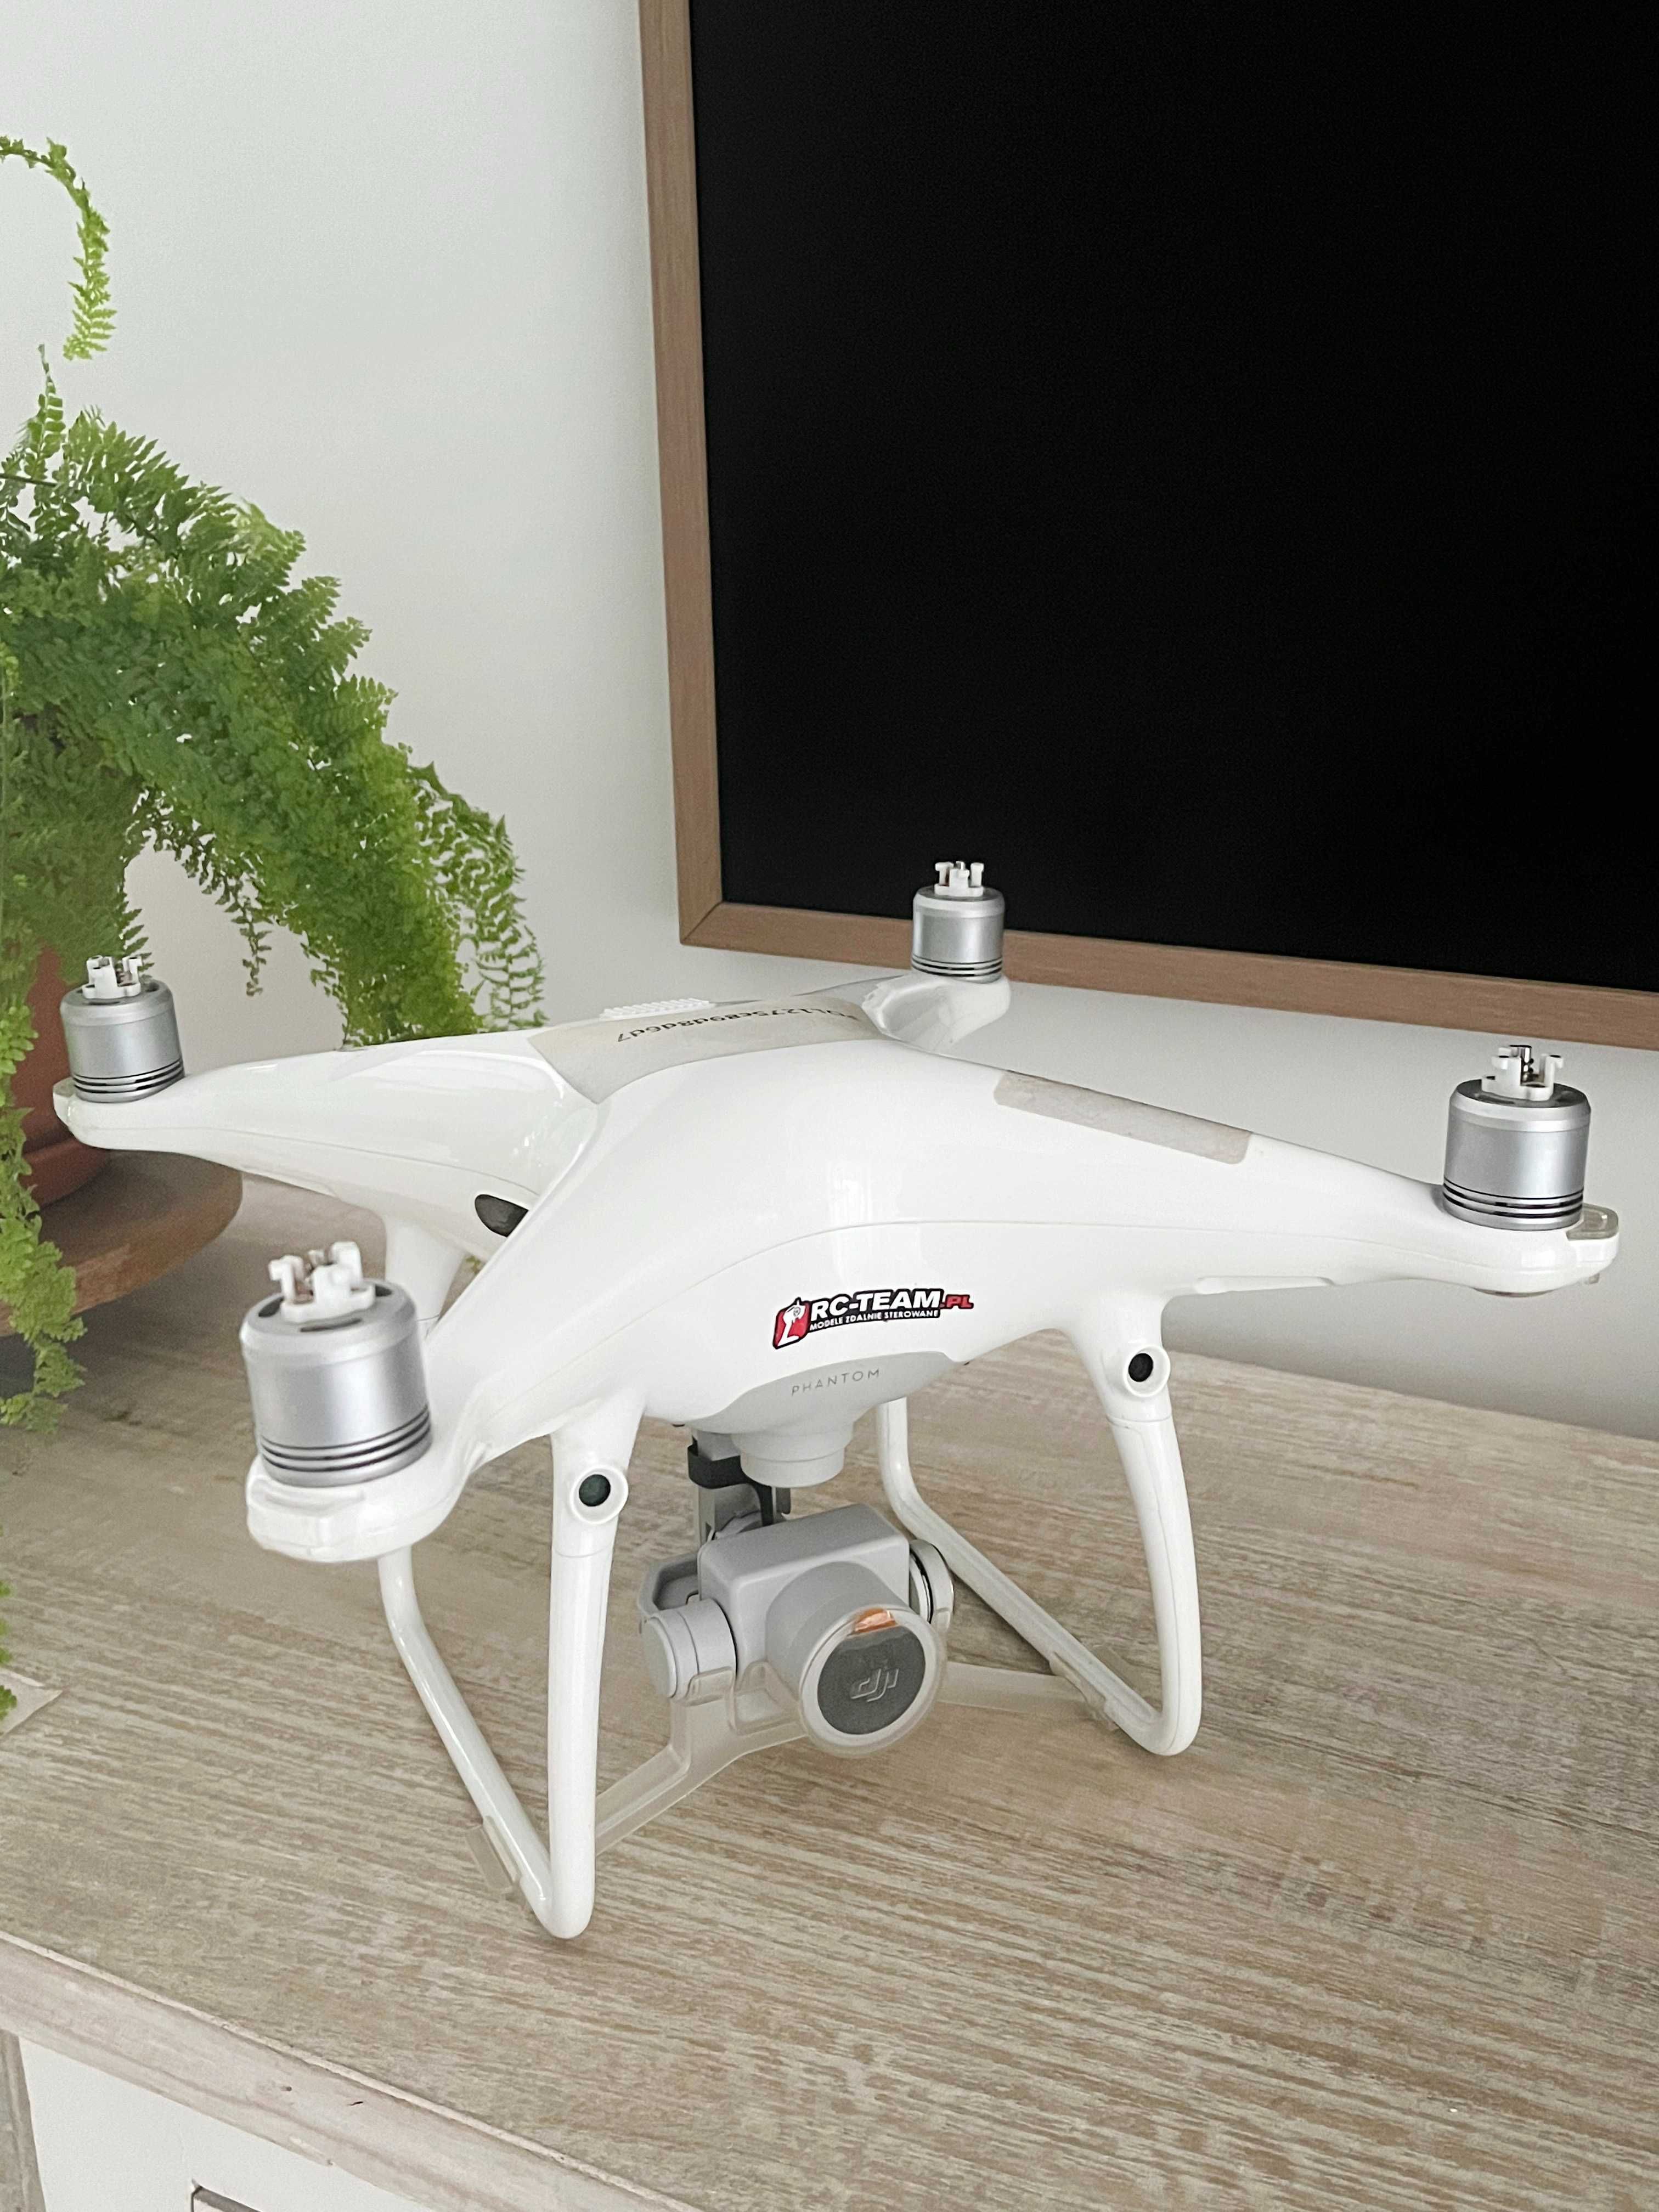 Dron DJI Phantom 4 Pro + zestaw akcesoriów + pancerny plecak LowePro